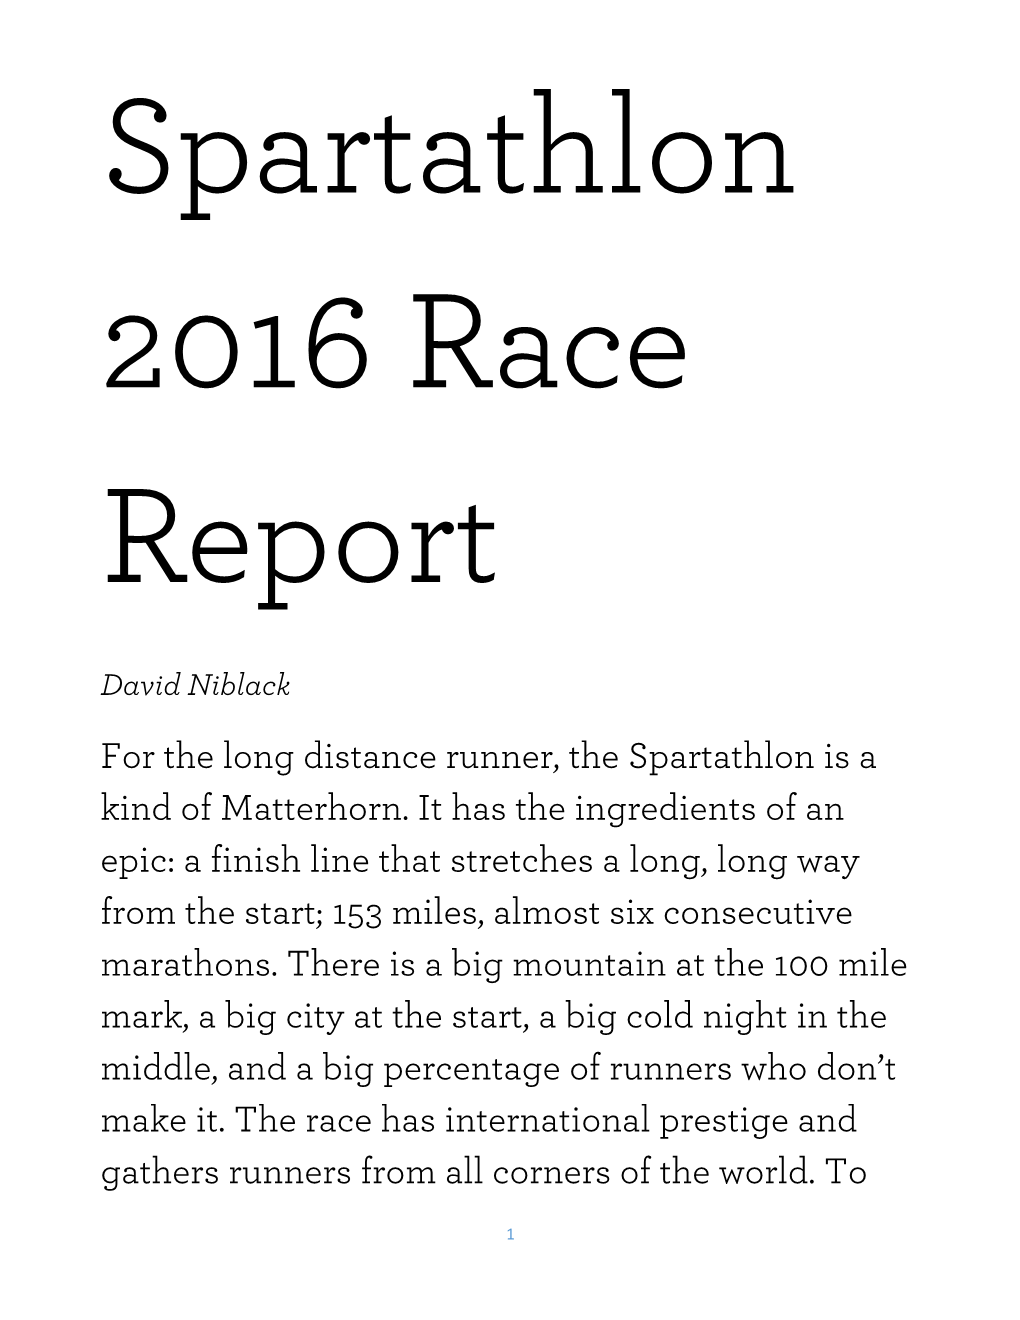 For the Long Distance Runner, the Spartathlon Is a Kind of Matterhorn